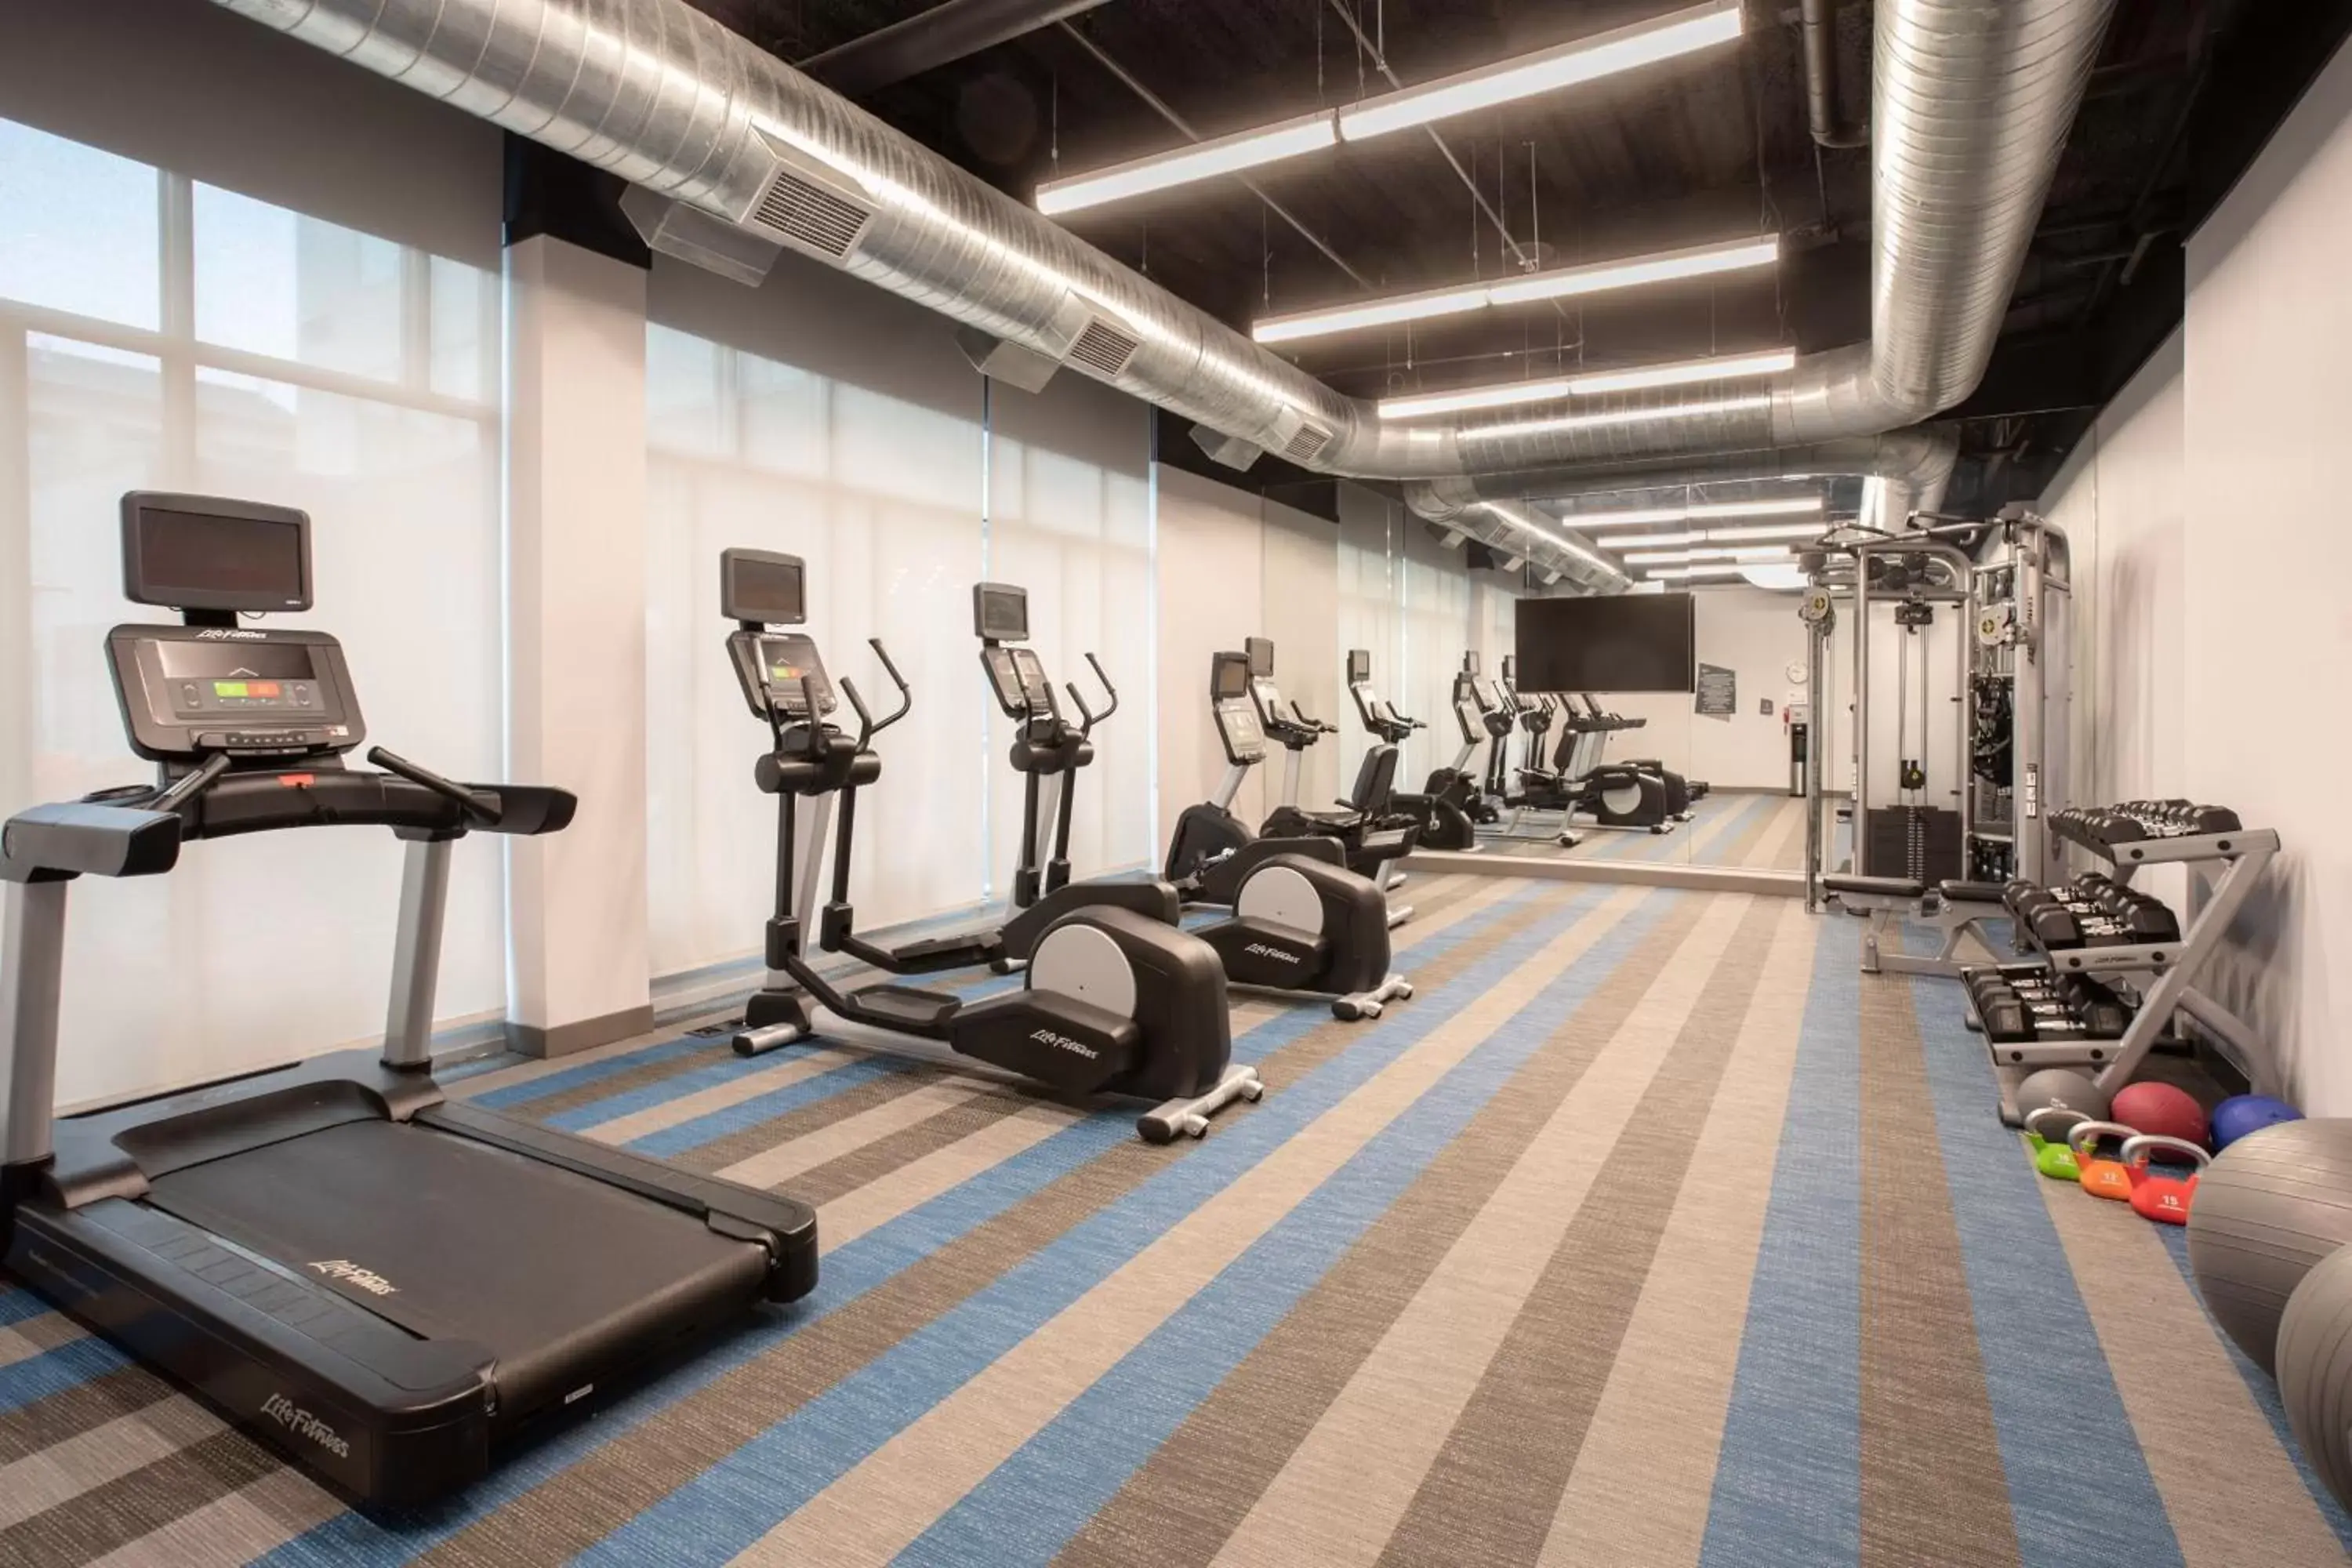 Fitness centre/facilities, Fitness Center/Facilities in Aloft Omaha Aksarben Village